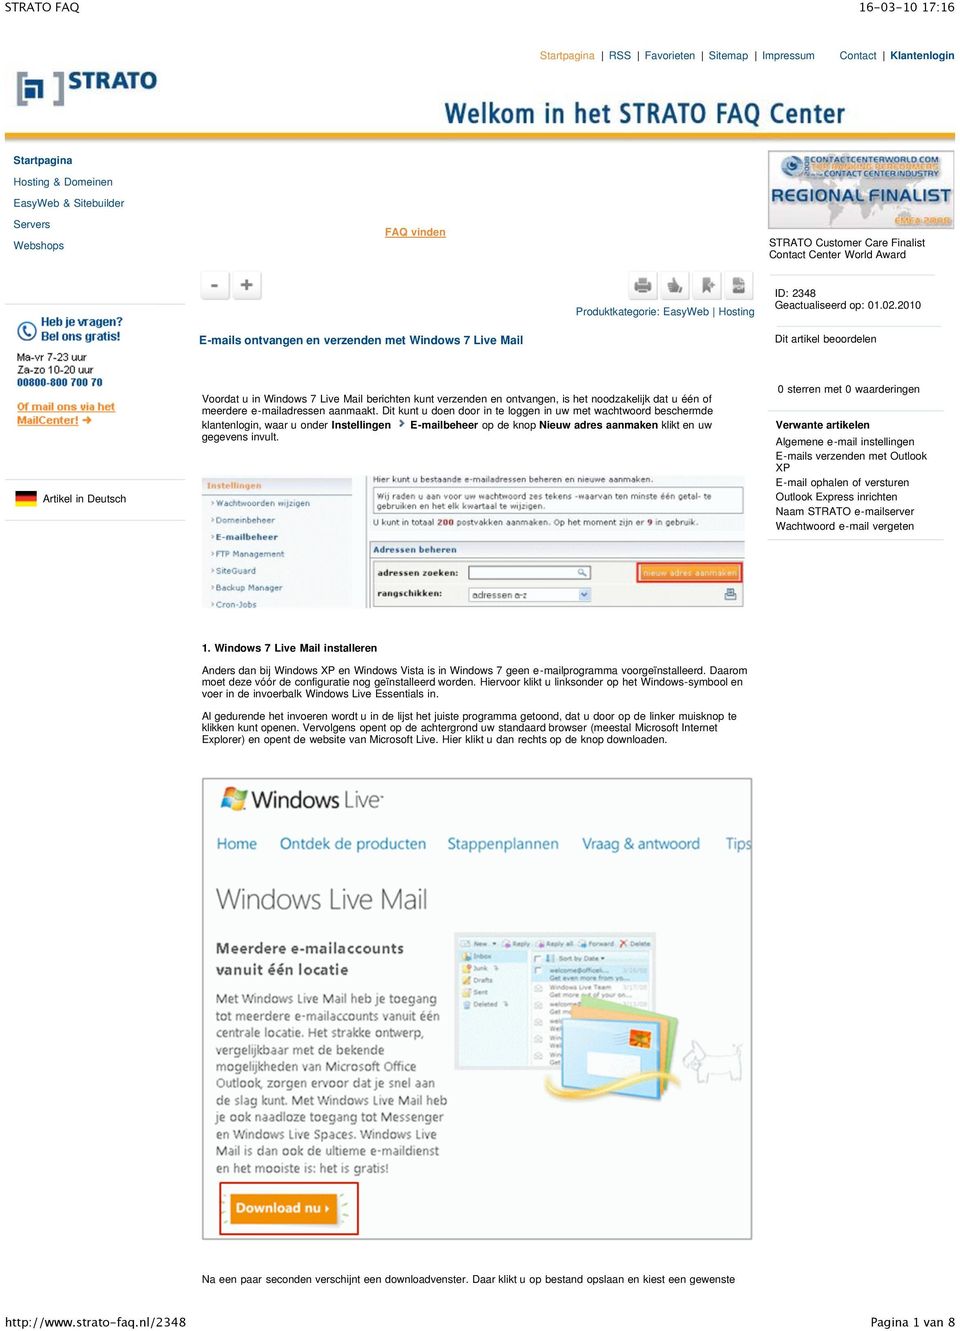 2010 E-mails ontvangen en verzenden met Windows 7 Live Mail Dit artikel beoordelen Artikel in Deutsch Voordat u in Windows 7 Live Mail berichten kunt verzenden en ontvangen, is het noodzakelijk dat u